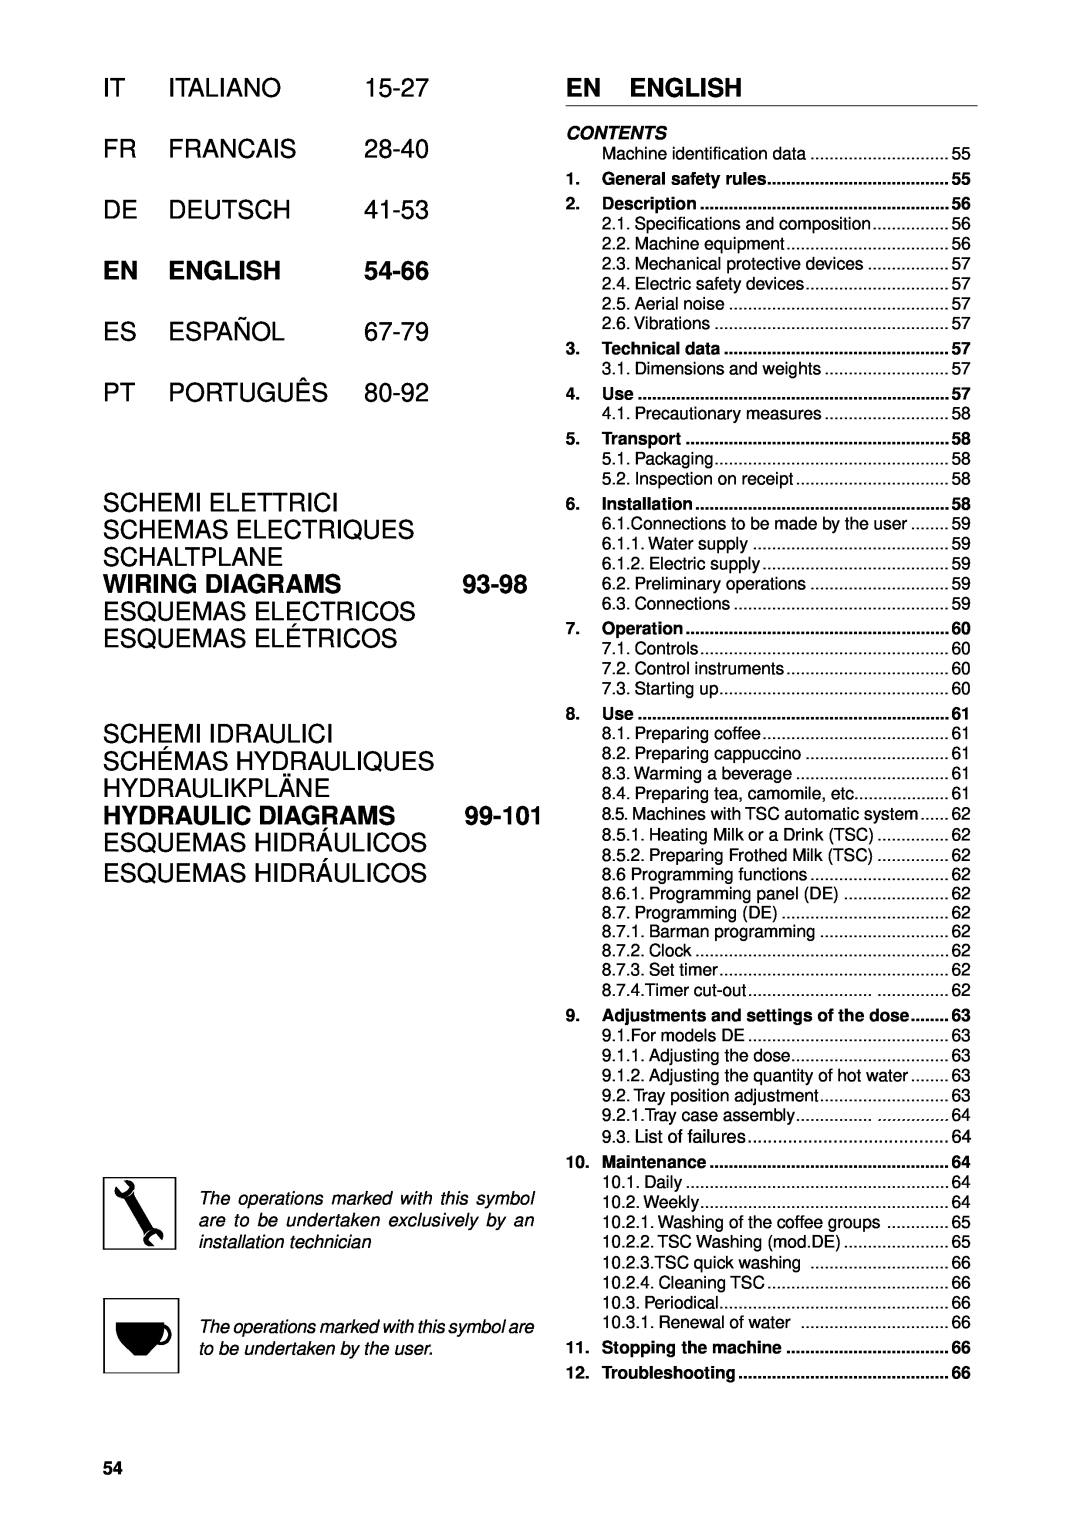 Rancilio Classe 8 manual English, 54-66, Wiring Diagrams, 93-98, Hydraulic Diagrams 